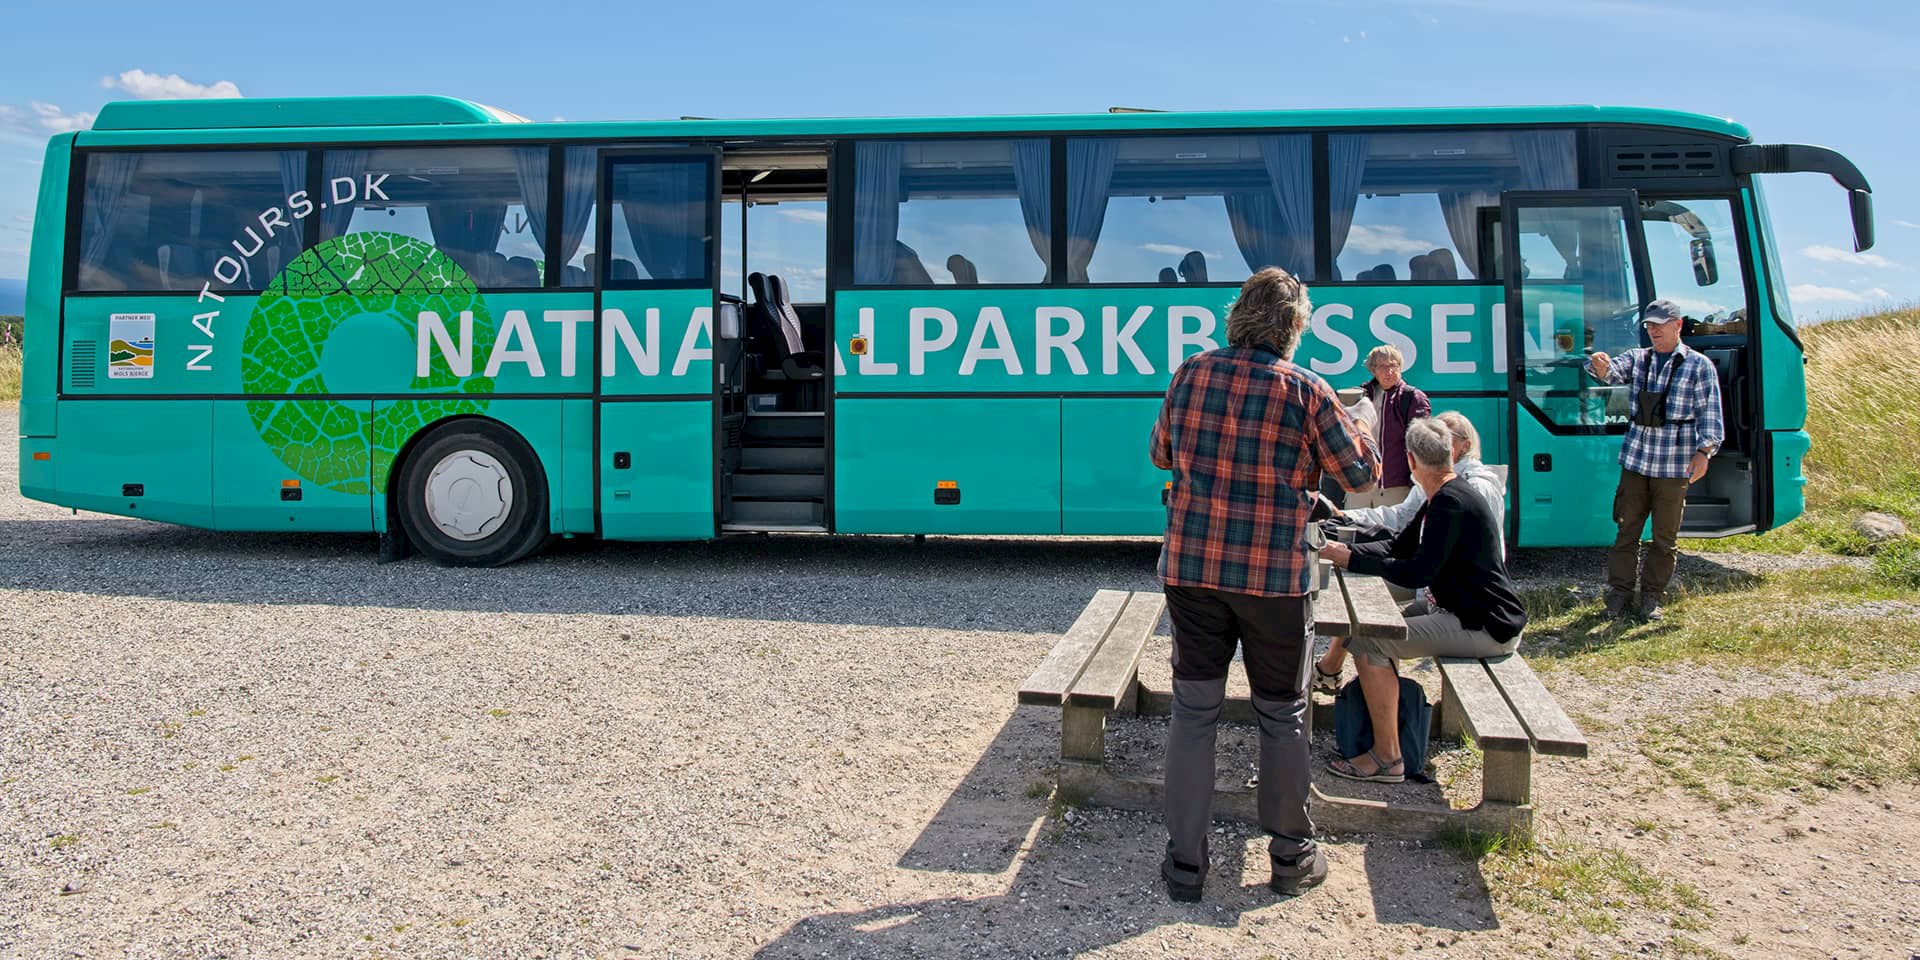 John Simoni's Naturbus - Nationalparkbussen | FOF Aarhus